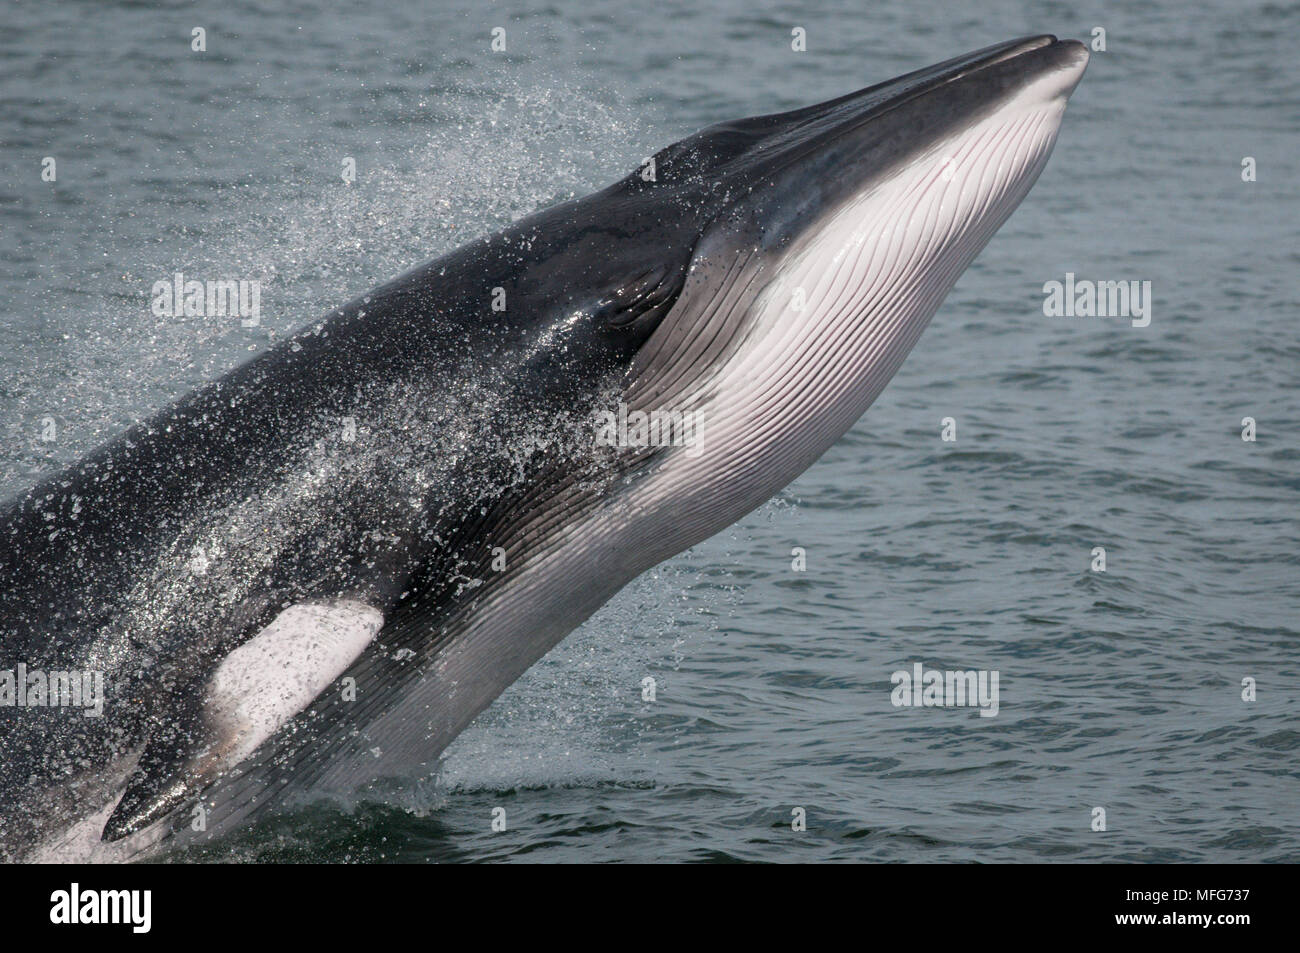 Ласты китообразных. Отряд китообразные усатые киты. Усатый кит полосатик. Морские млекопитающие китообразные. Гренландский кит и полосатик.